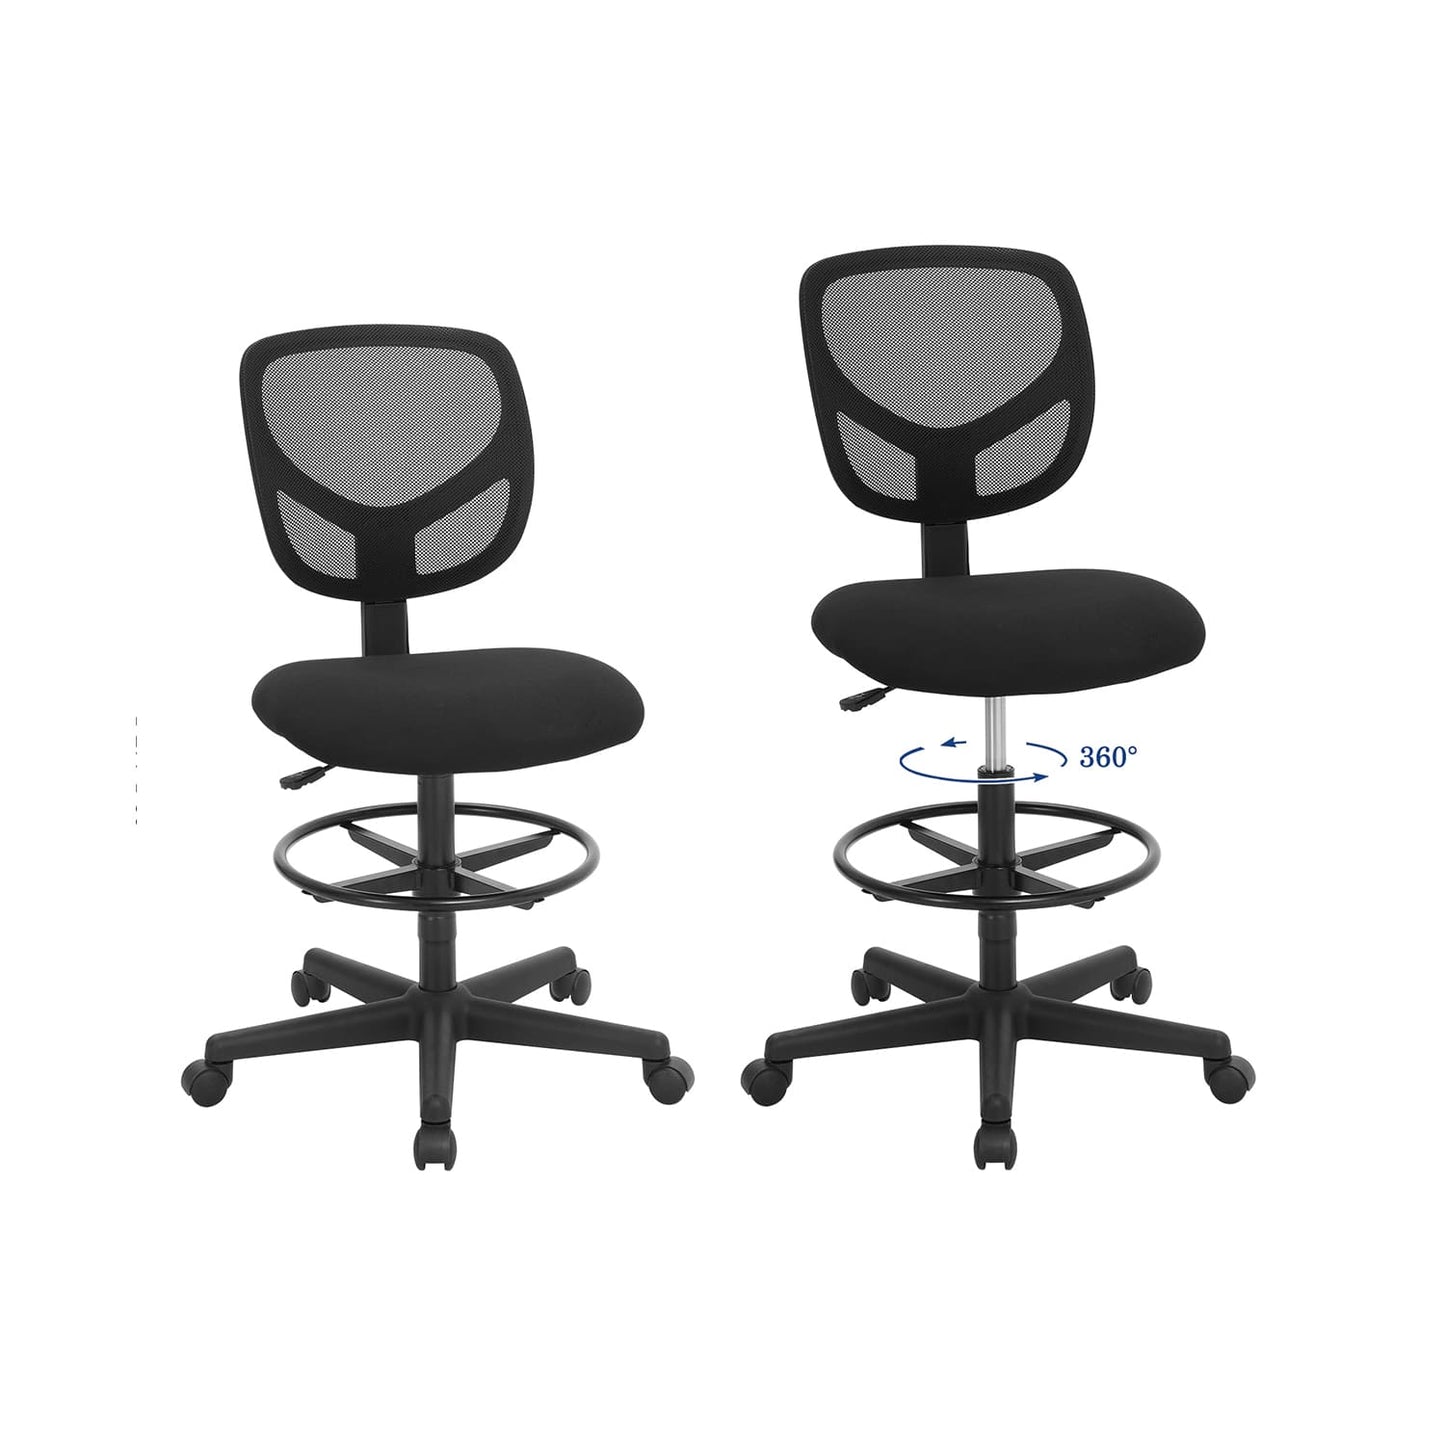 SONGMICS - Chaise de bureau, Confort maximal: Siège ergonomique rembourré, Repose-pieds, Pivote à 360 degrés